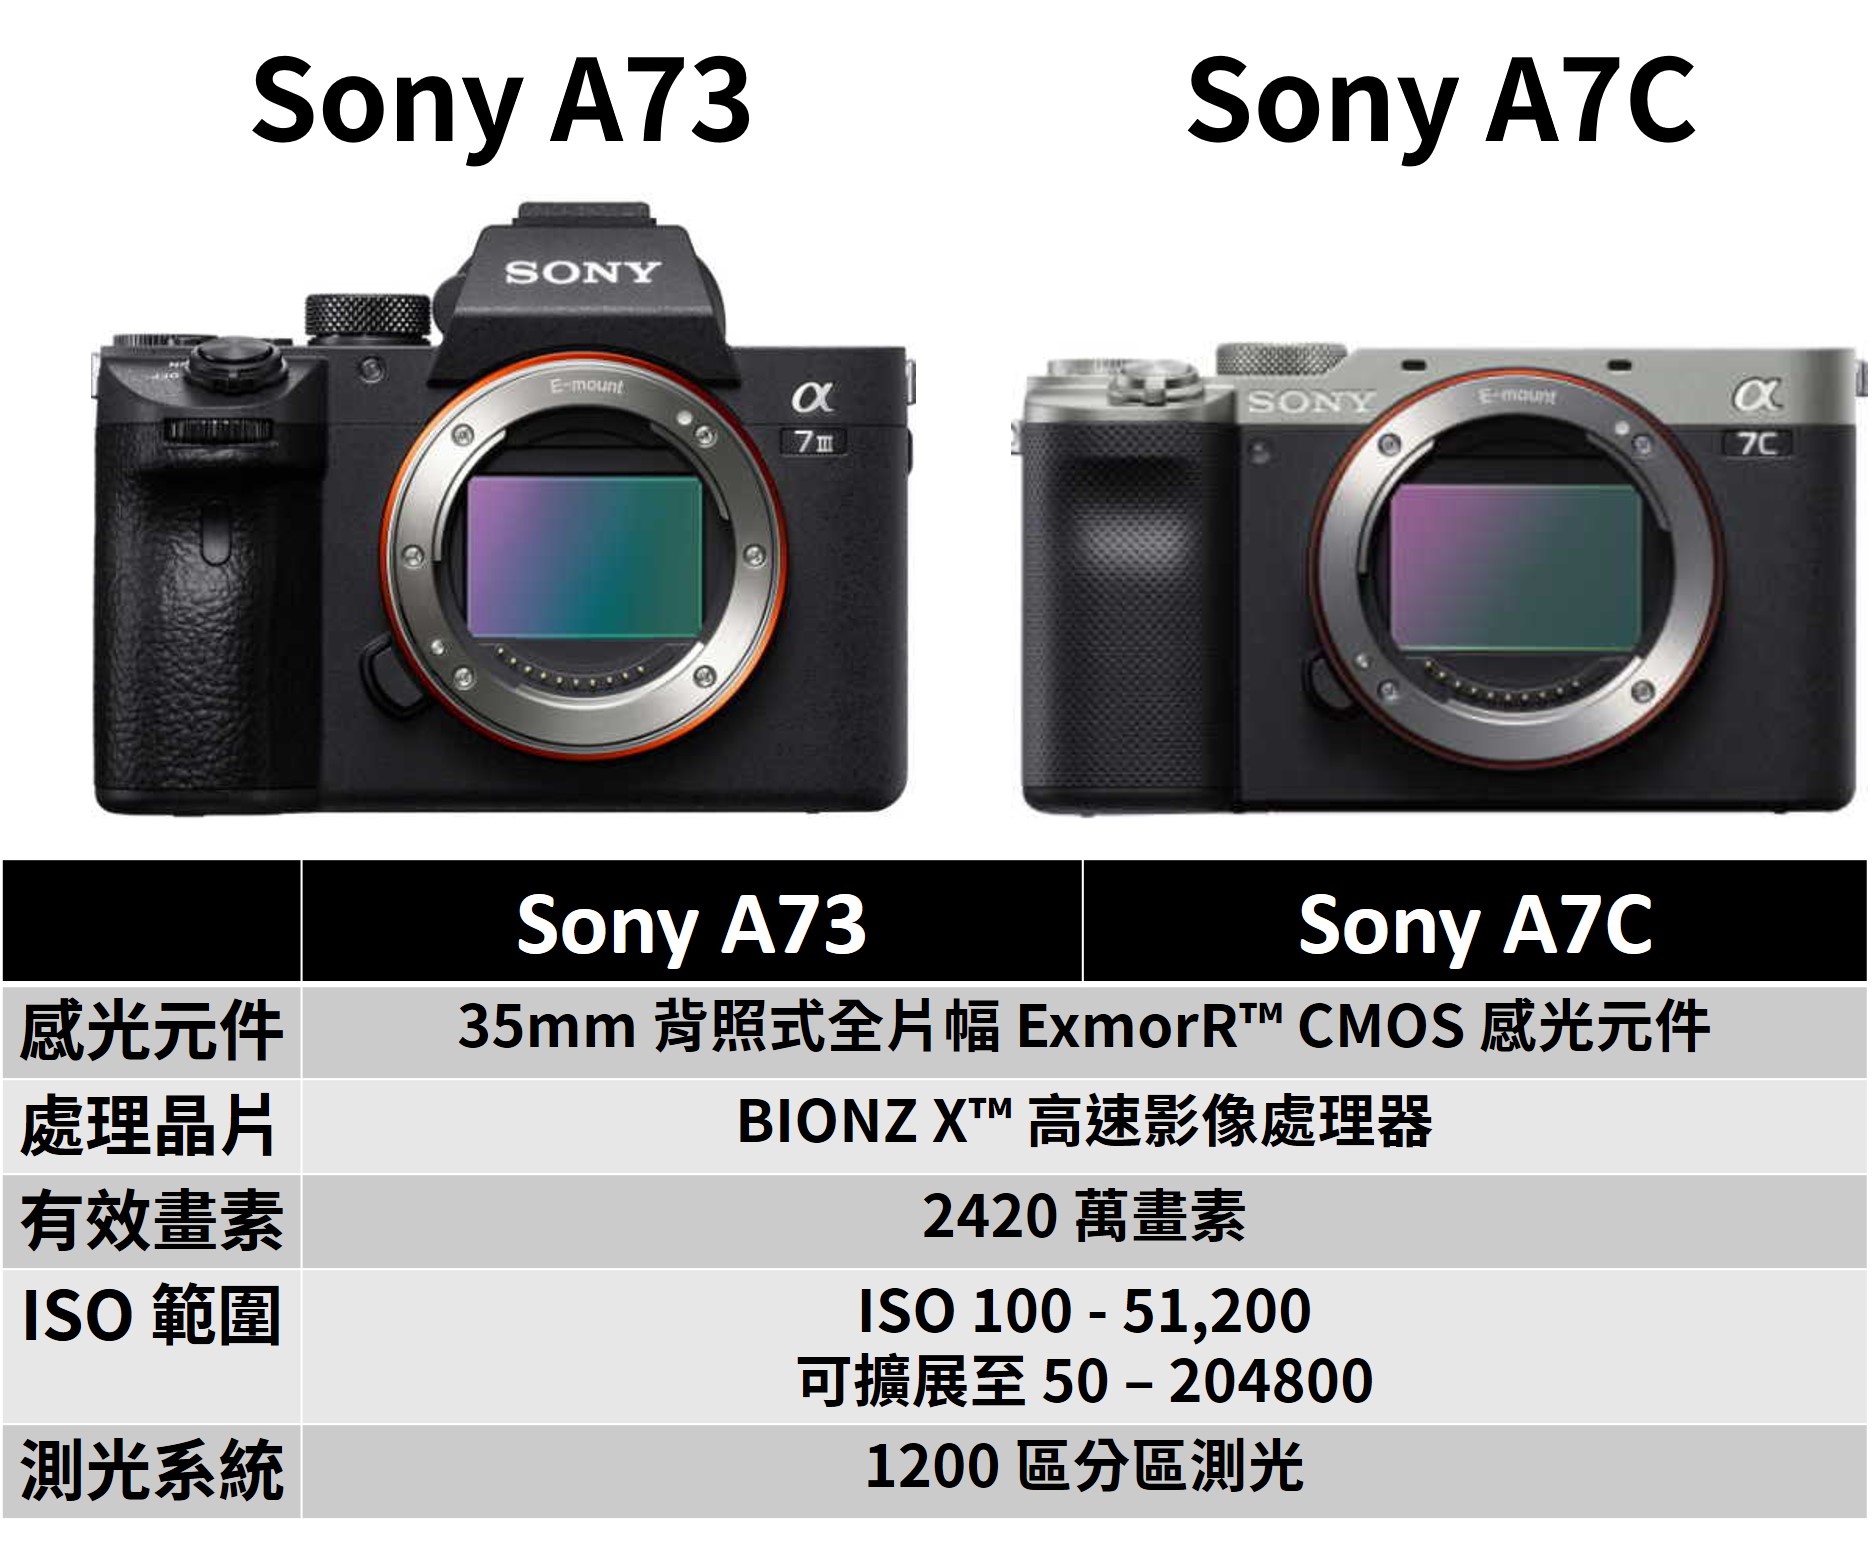 [比攝影109] Sony A7C 與 Sony A73 比較 ，買哪台比較適合你? 10 張圖告訴你